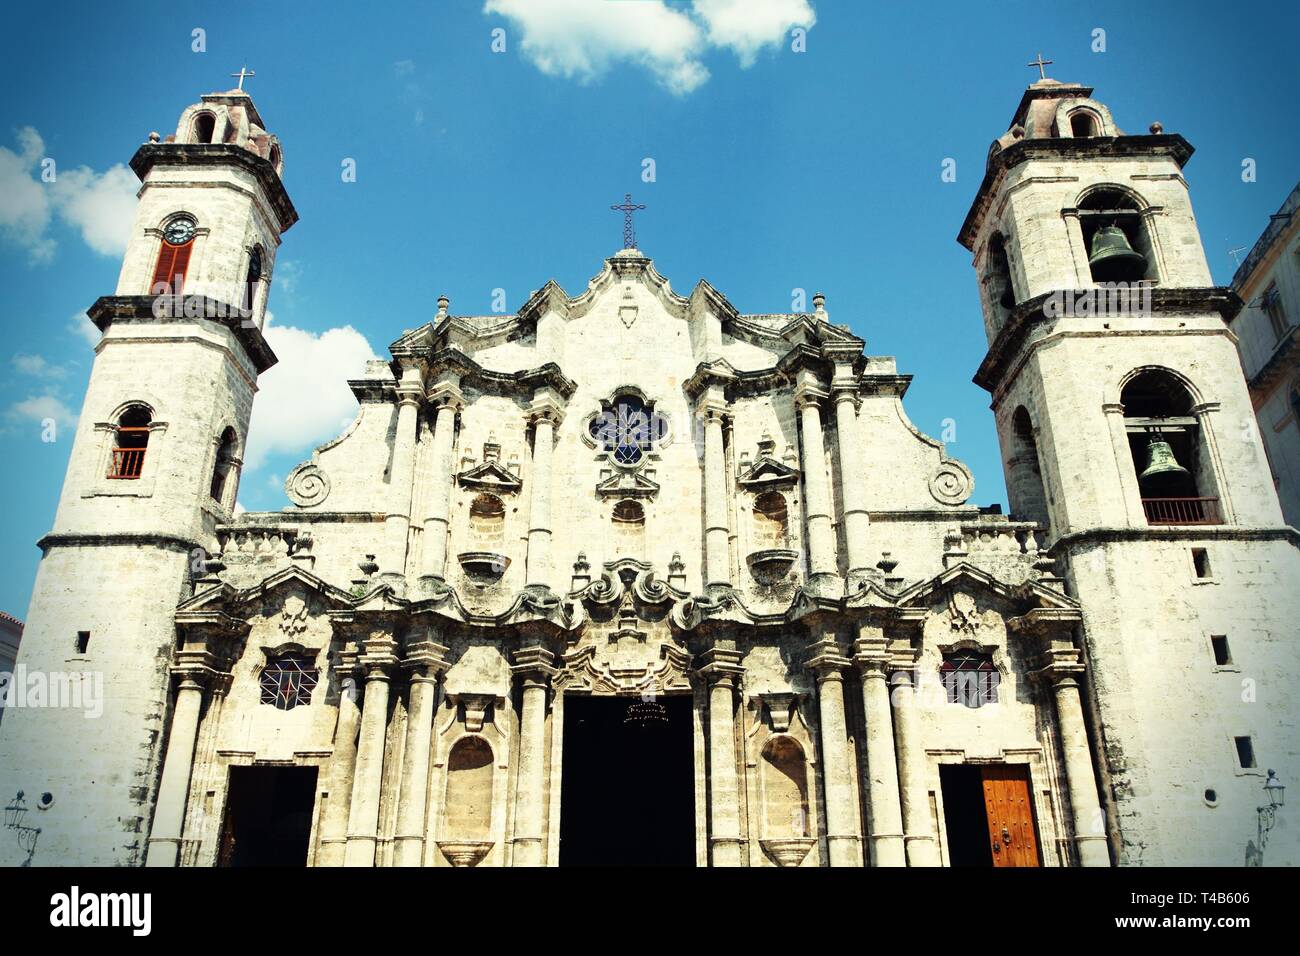 L'Avana, Cuba - architettura della città. Famosa Cattedrale barocca, con le sue torri asimmetriche. Retro Vintage foto a colori. Foto Stock